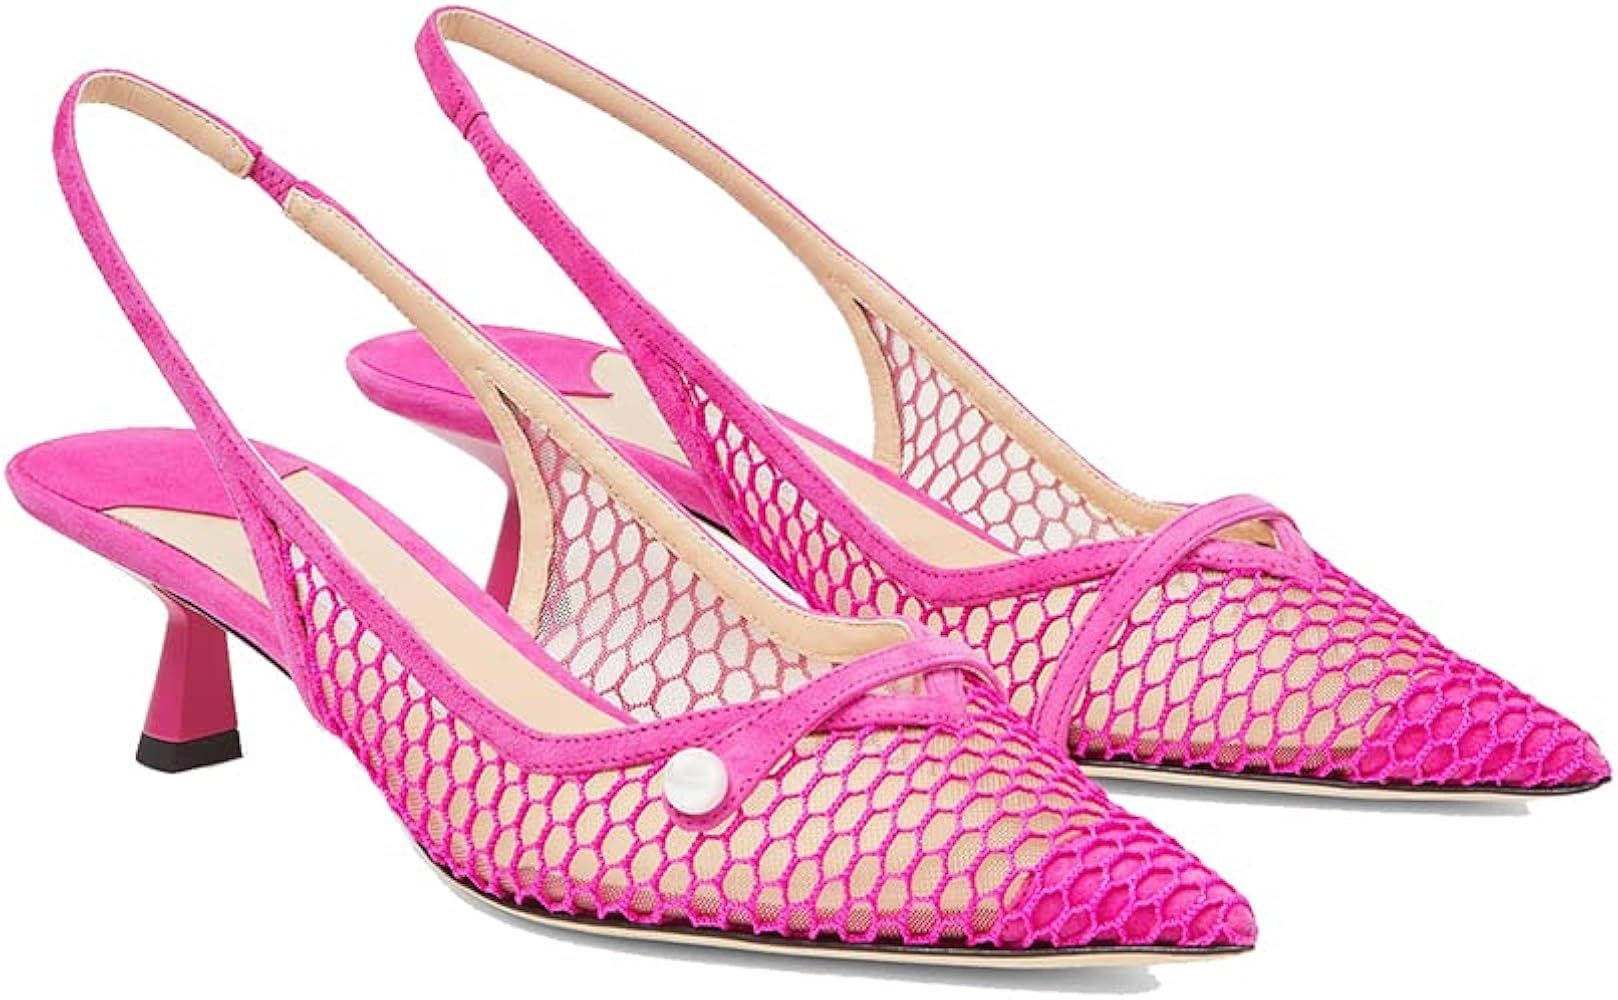 THESHY Women's Slingback Kitten Heel Glitter Pointed Toe Pearl Low Heel Pumps Casual Wedding Shoe... | Amazon (US)